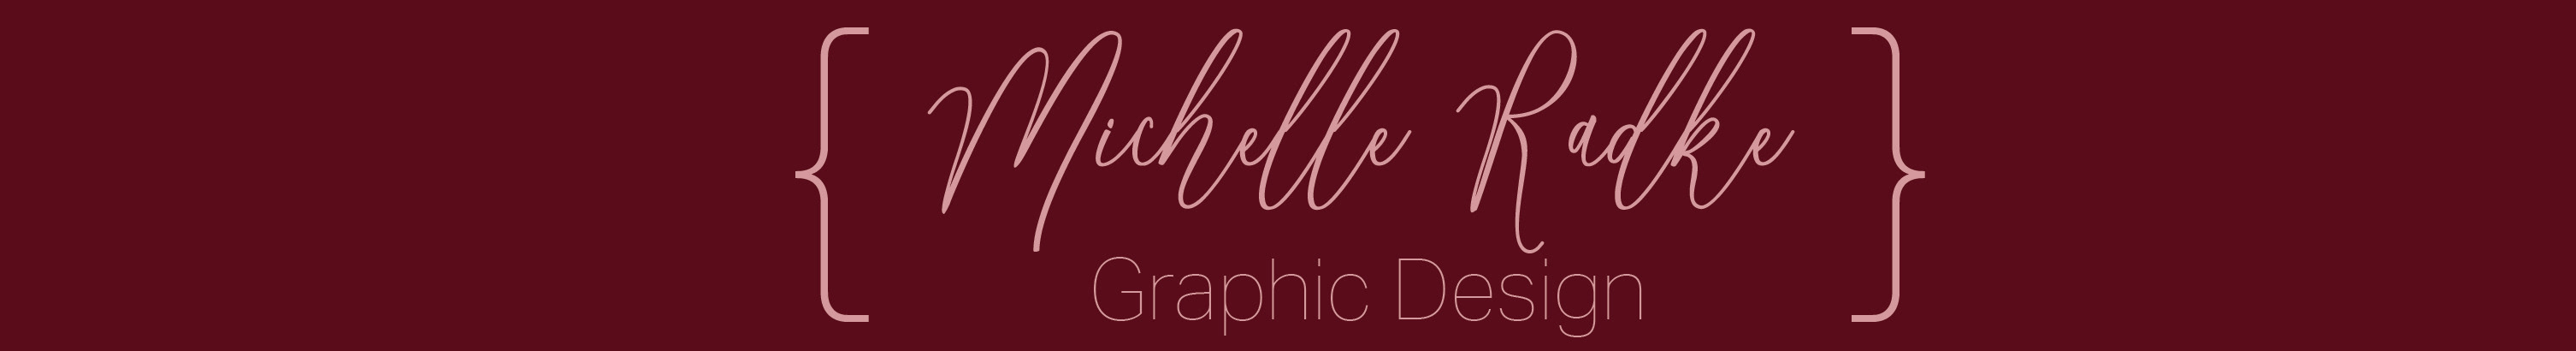 Profil-Banner von Michelle Thurman